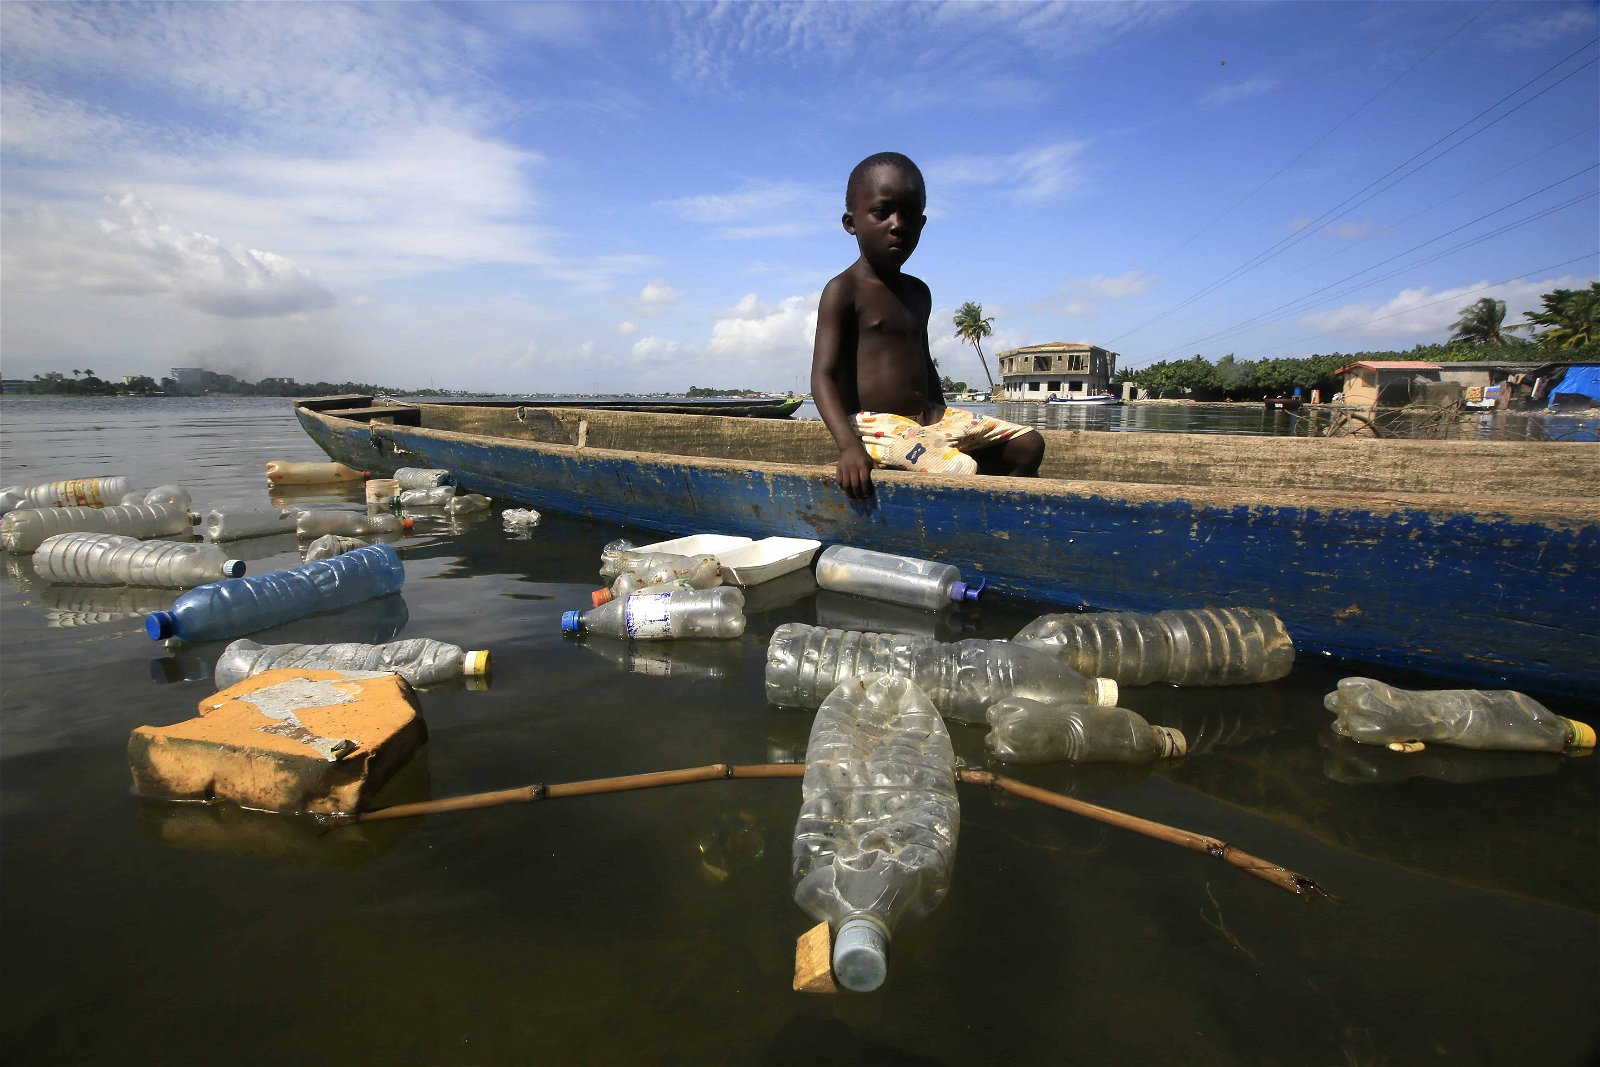 Een zwarte jongen wordt omringd door plastic in het water. Ook dit maakt deel uit van de globale watercrisis.